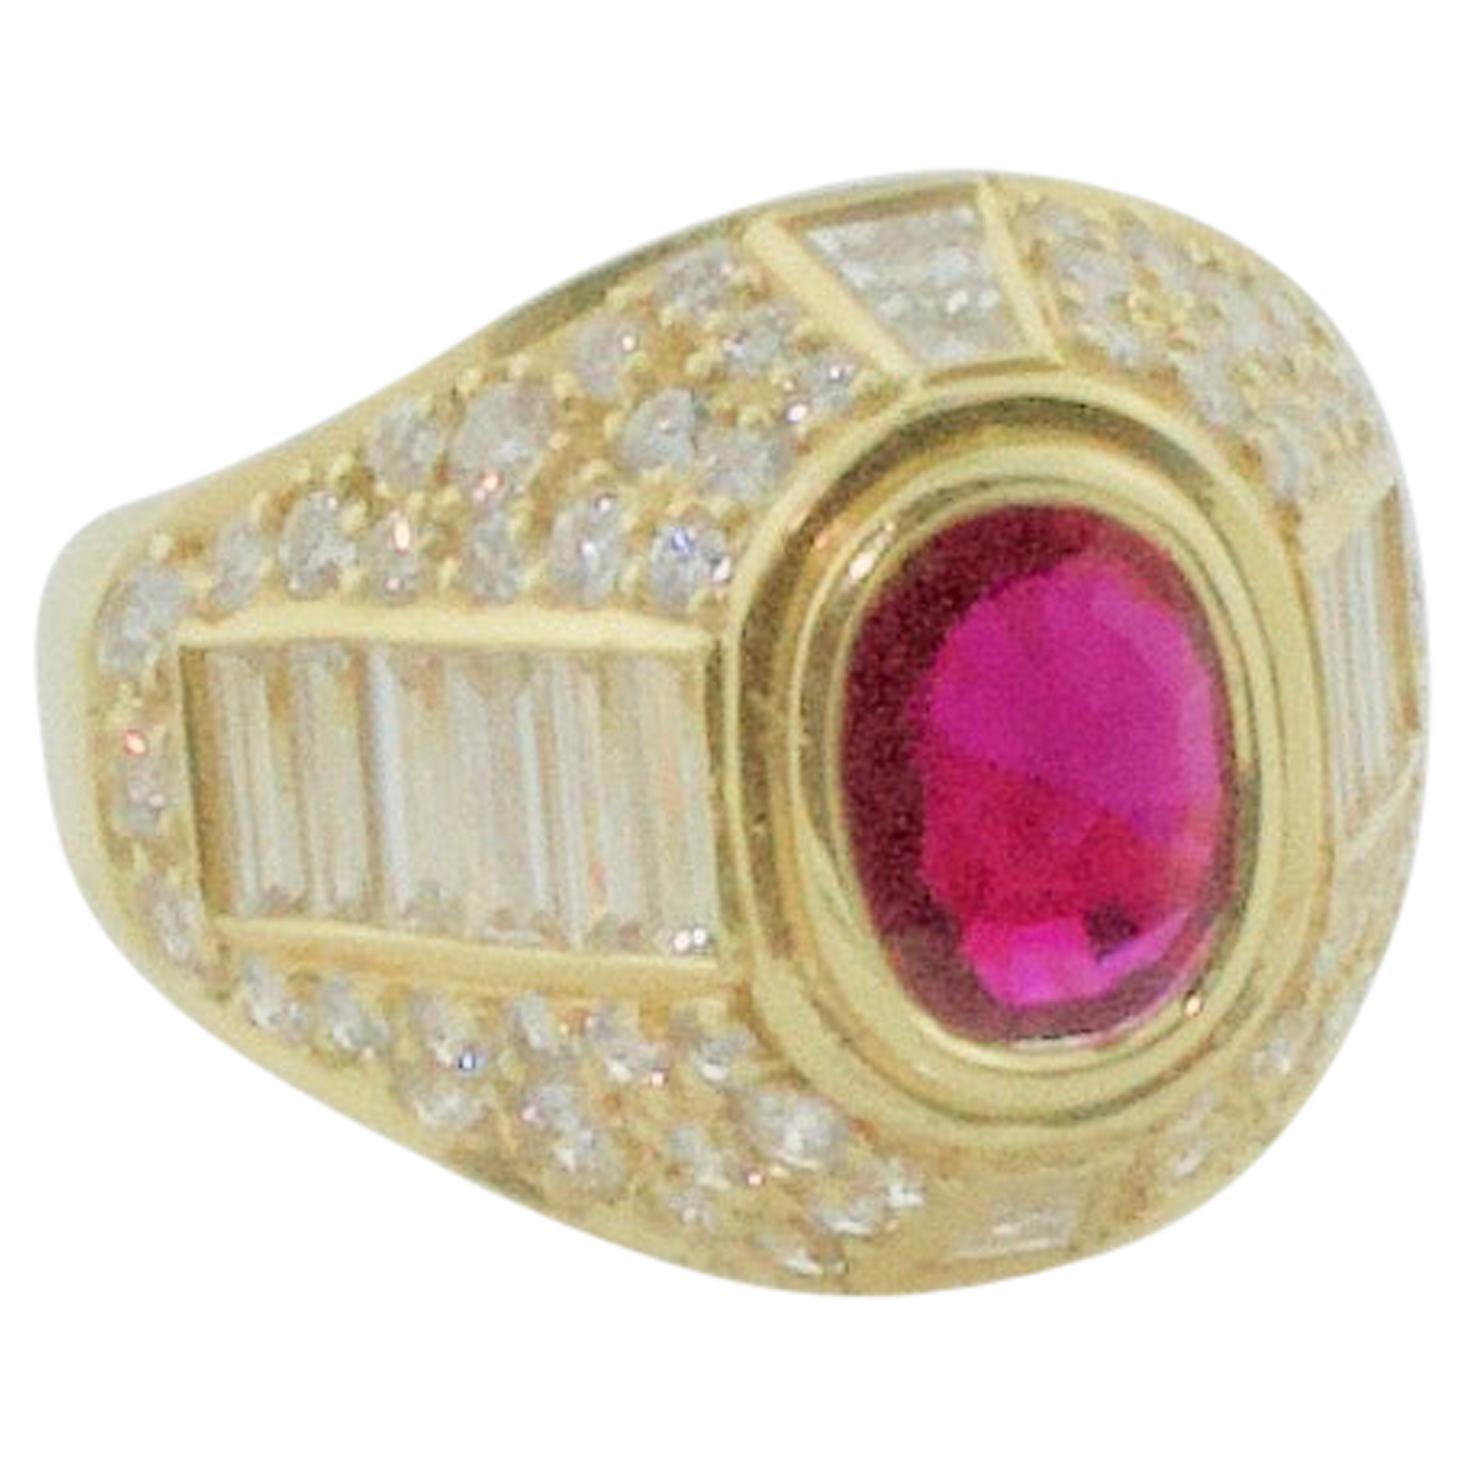 Bague à anneau de style cigare en or jaune 18 carats avec rubis de Birmanie et diamants